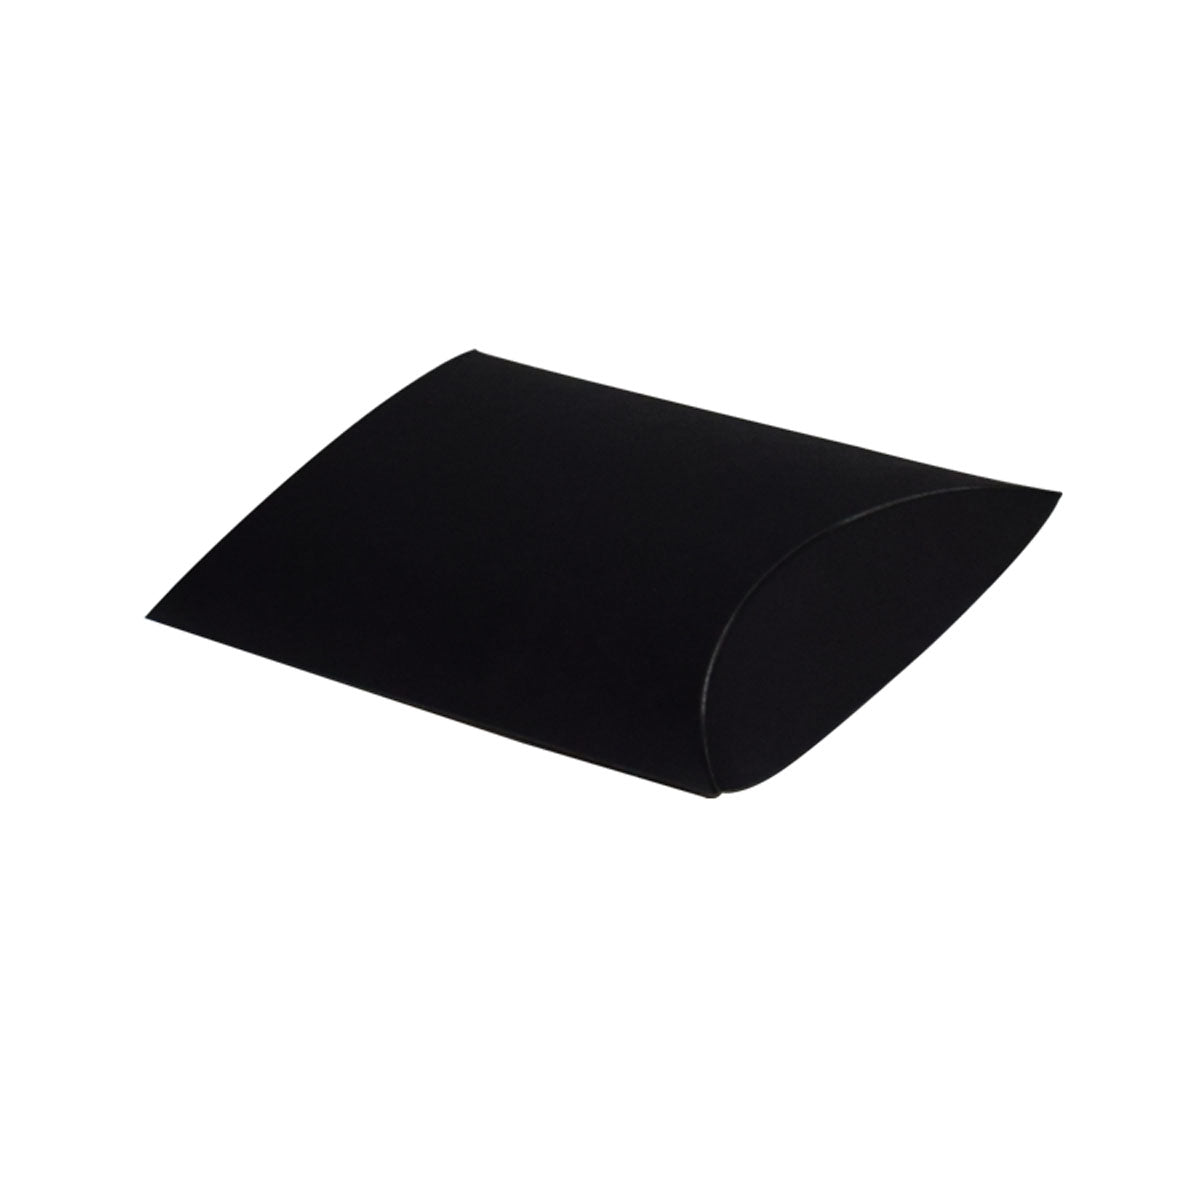 Pillow Box Black Matte 140x178x51mm